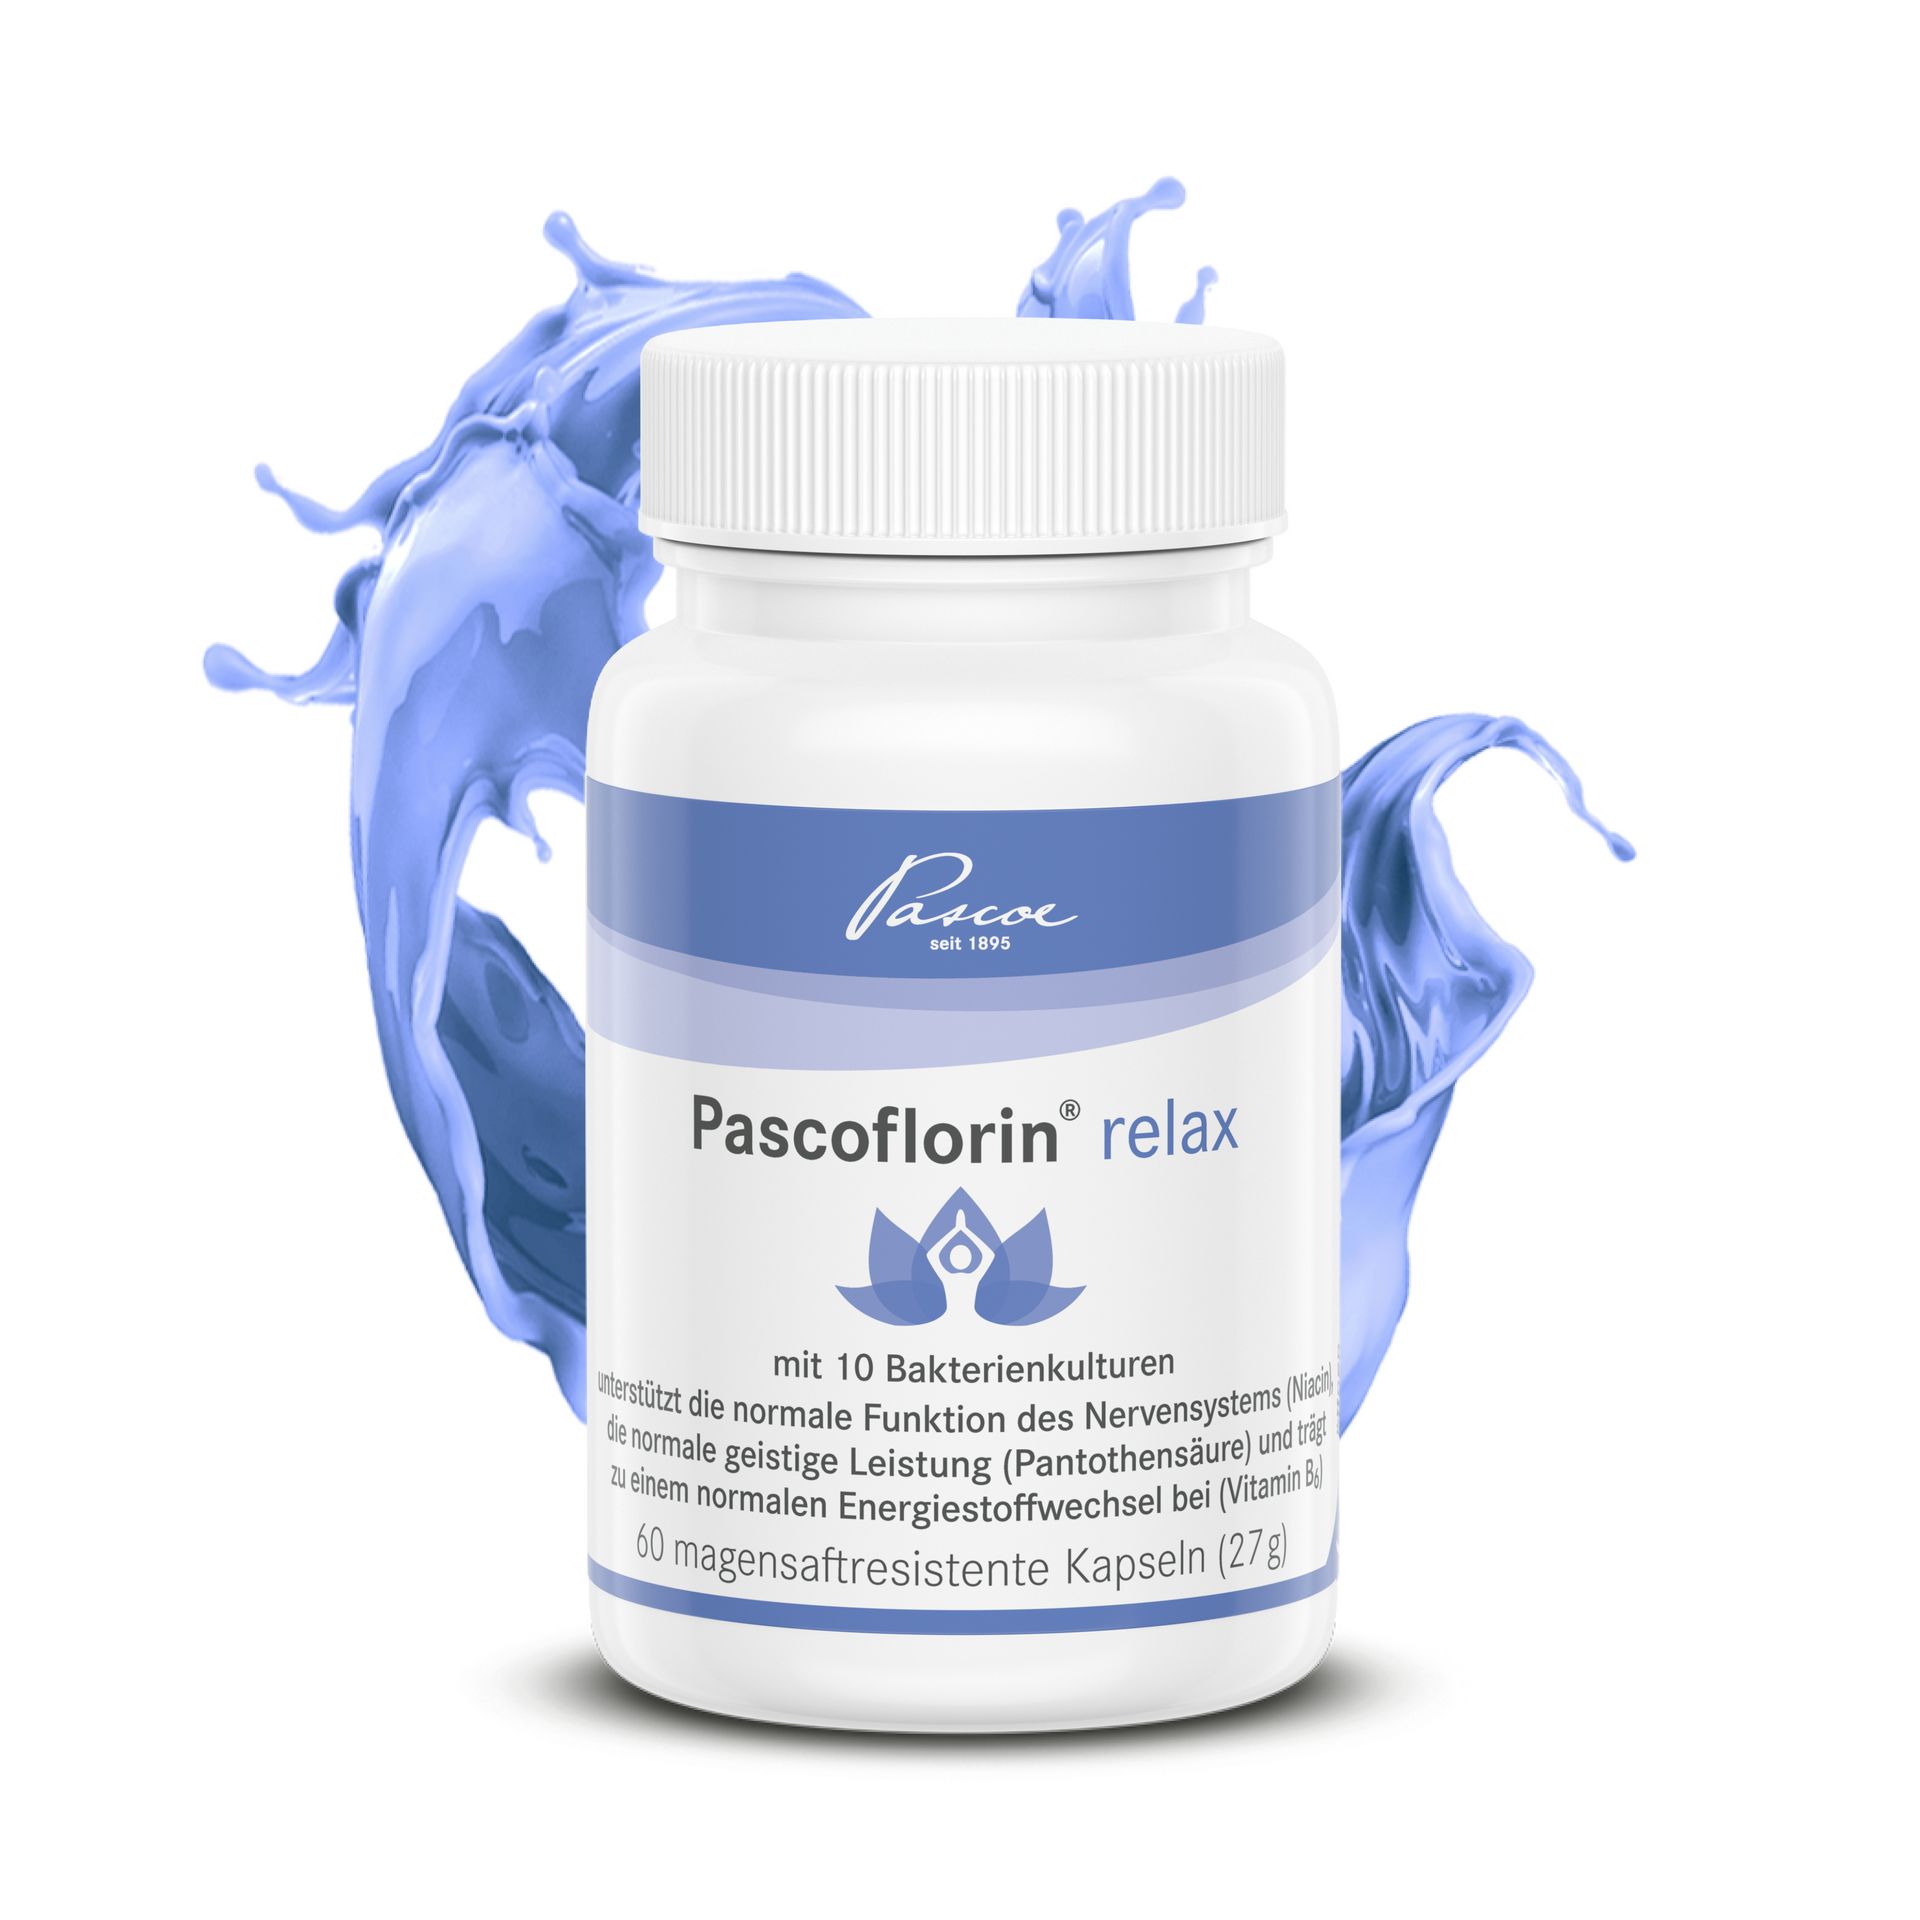 Pascoflorin relax Packshot